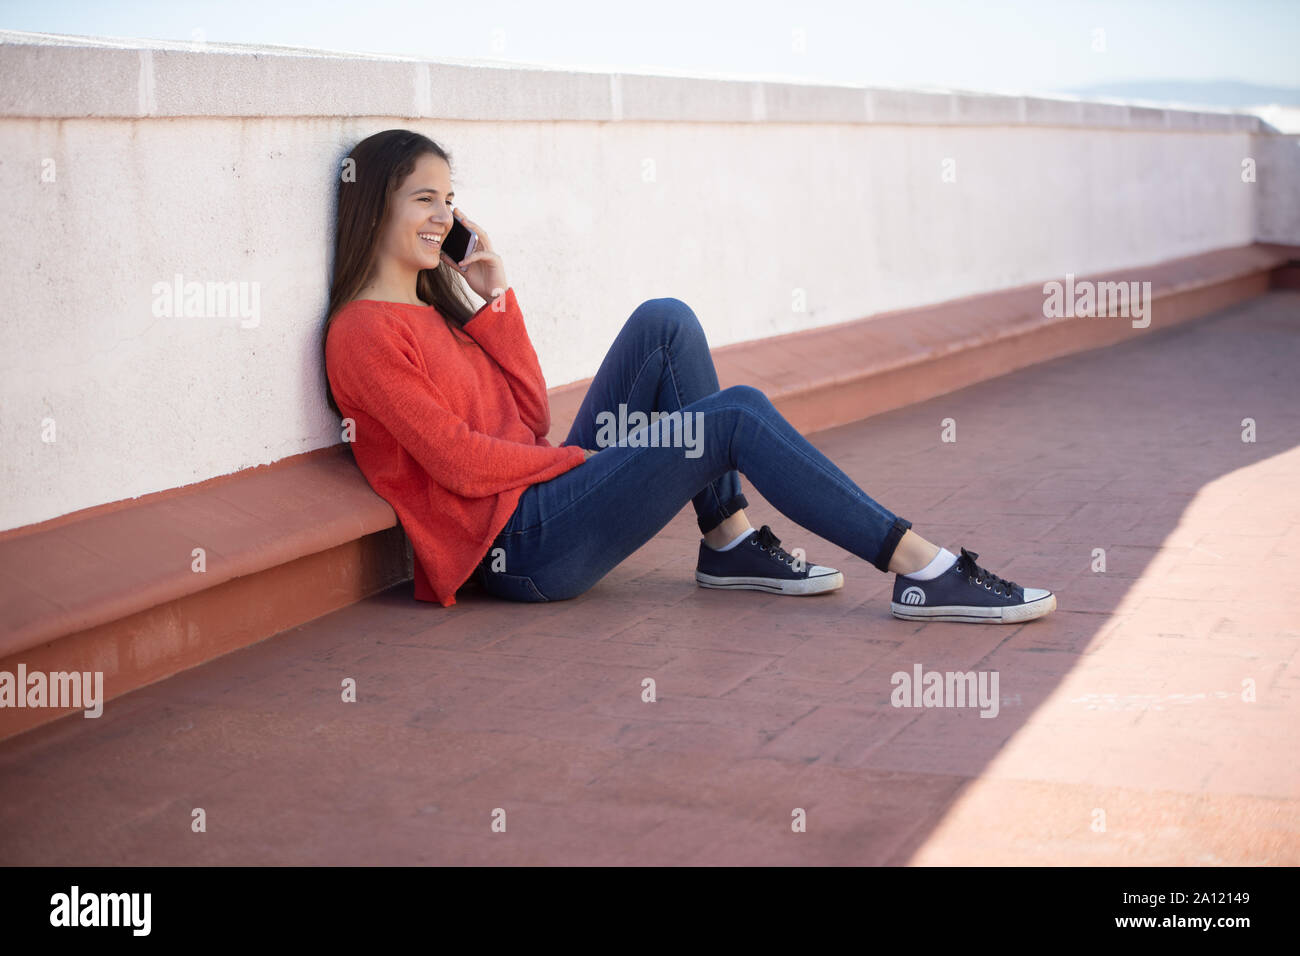 Chica adolescente hablando por teléfono sentada en la azotea Stock Photo